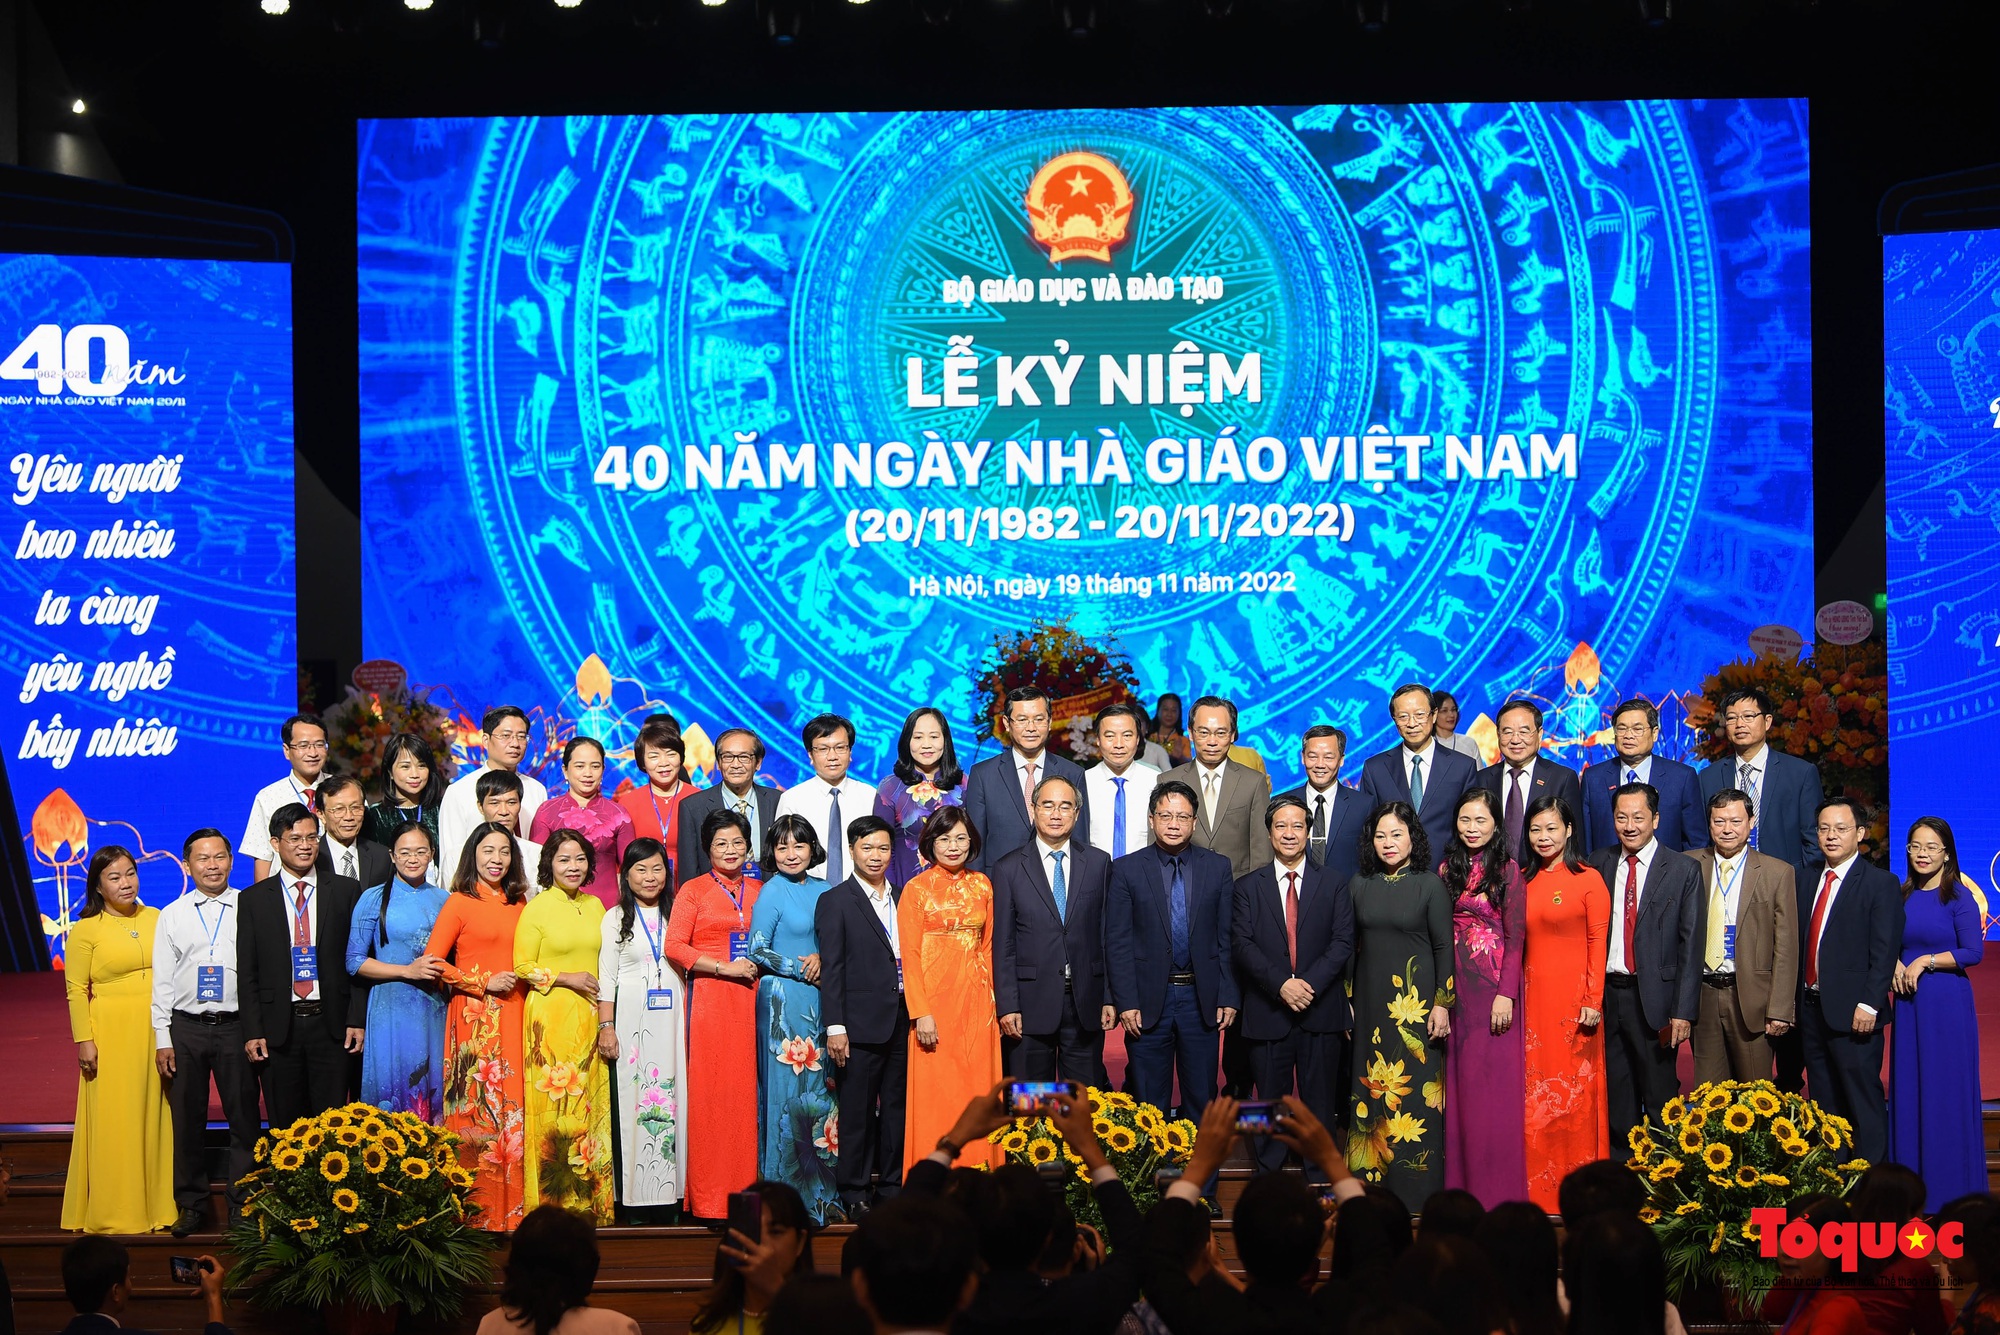 Long trọng lễ kỷ niệm 40 năm ngày Nhà giáo Việt Nam - Ảnh 11.